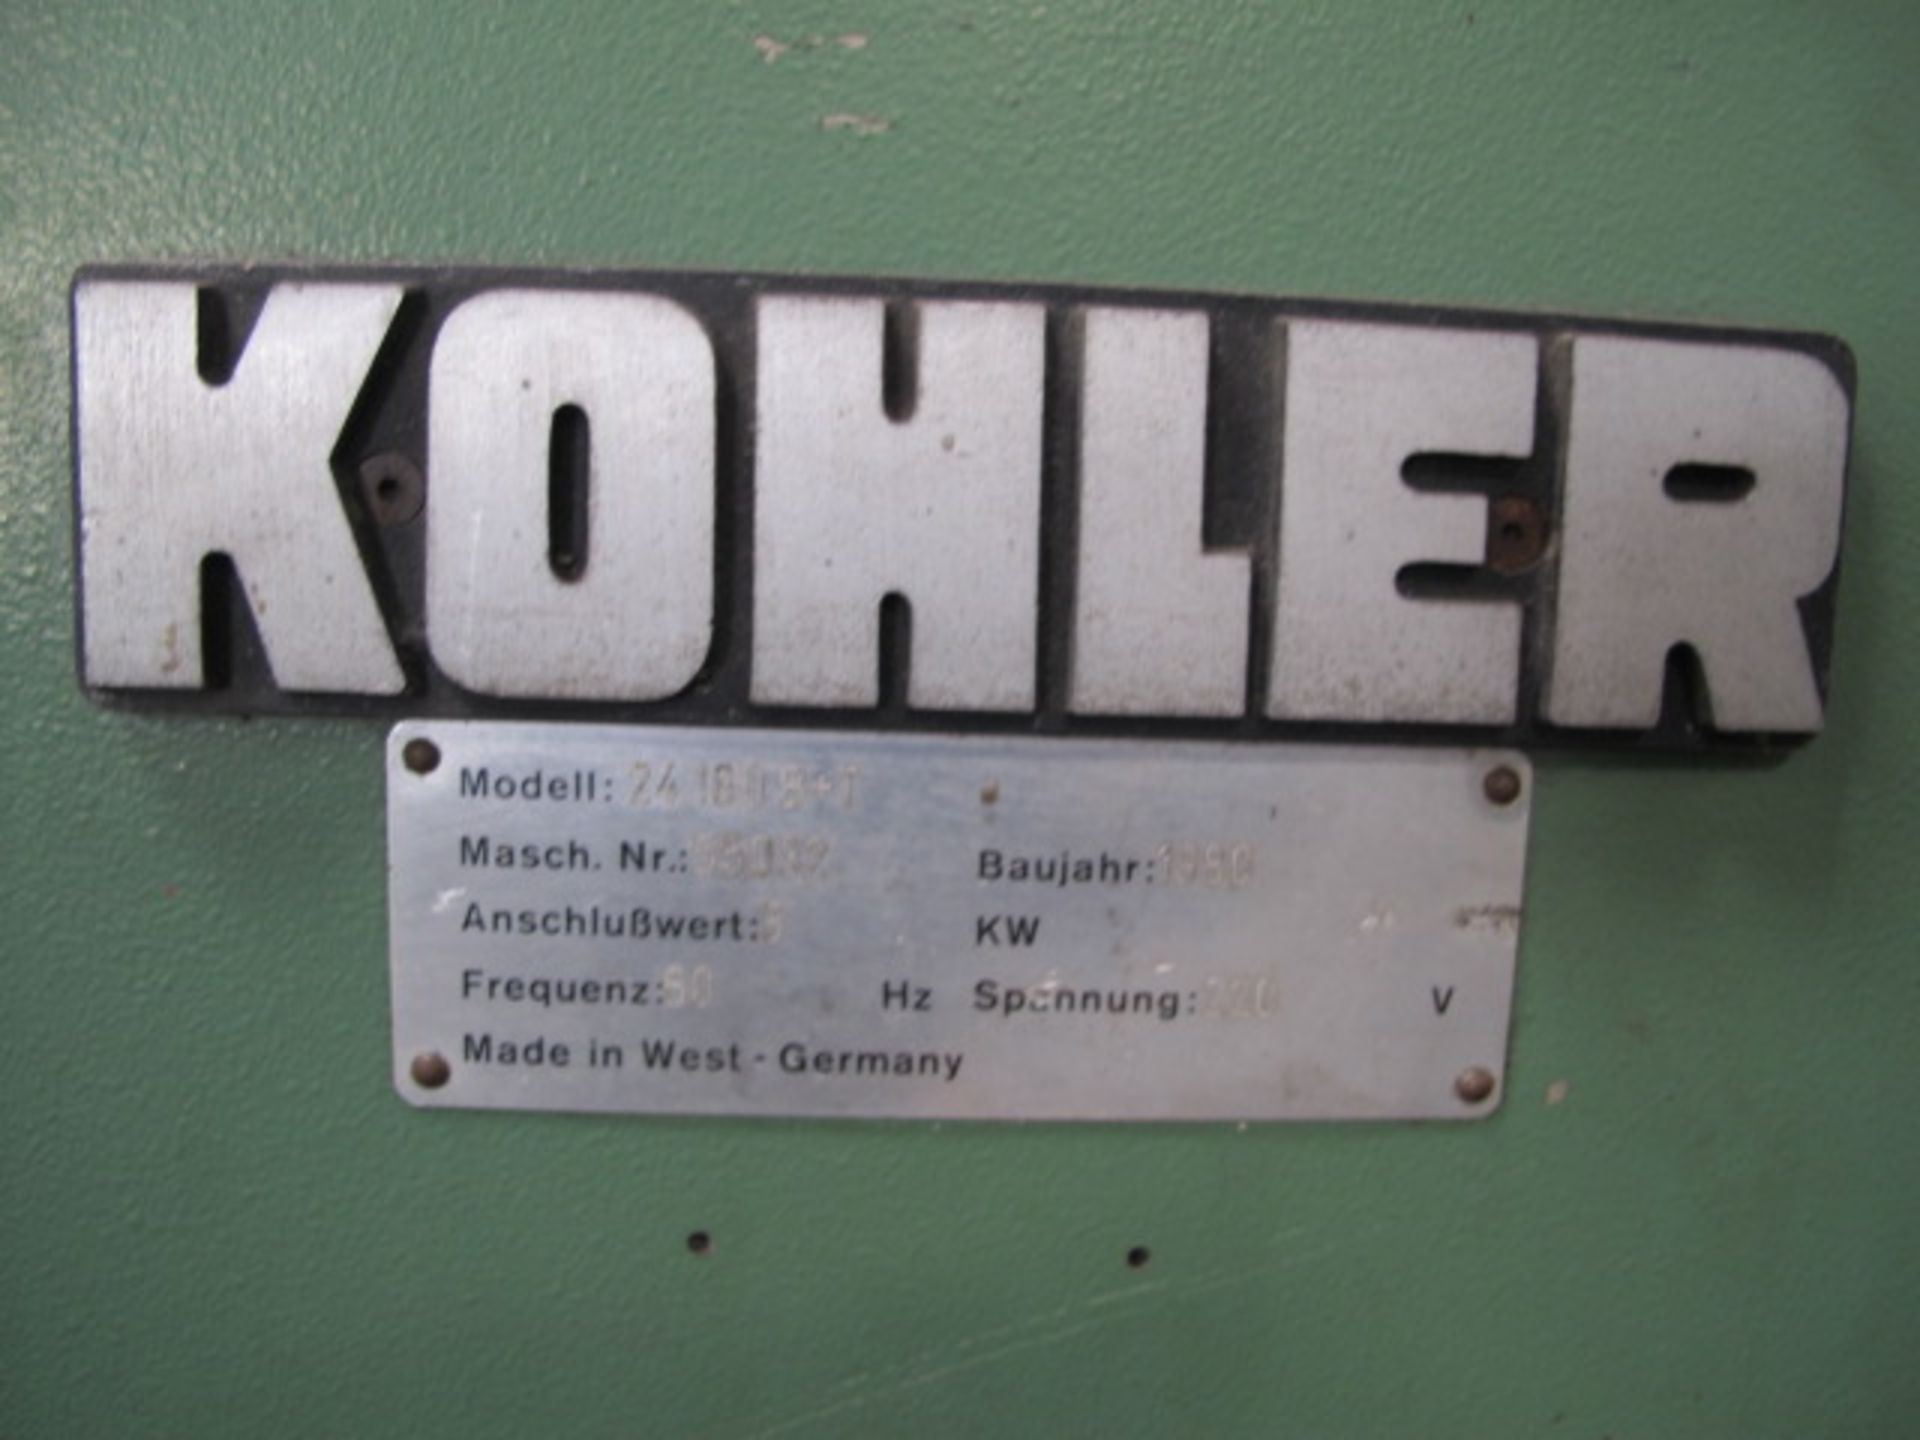 Kohler mdl. 24180B+T 6” Straightener/Feeder s/n 55032 - Image 5 of 5